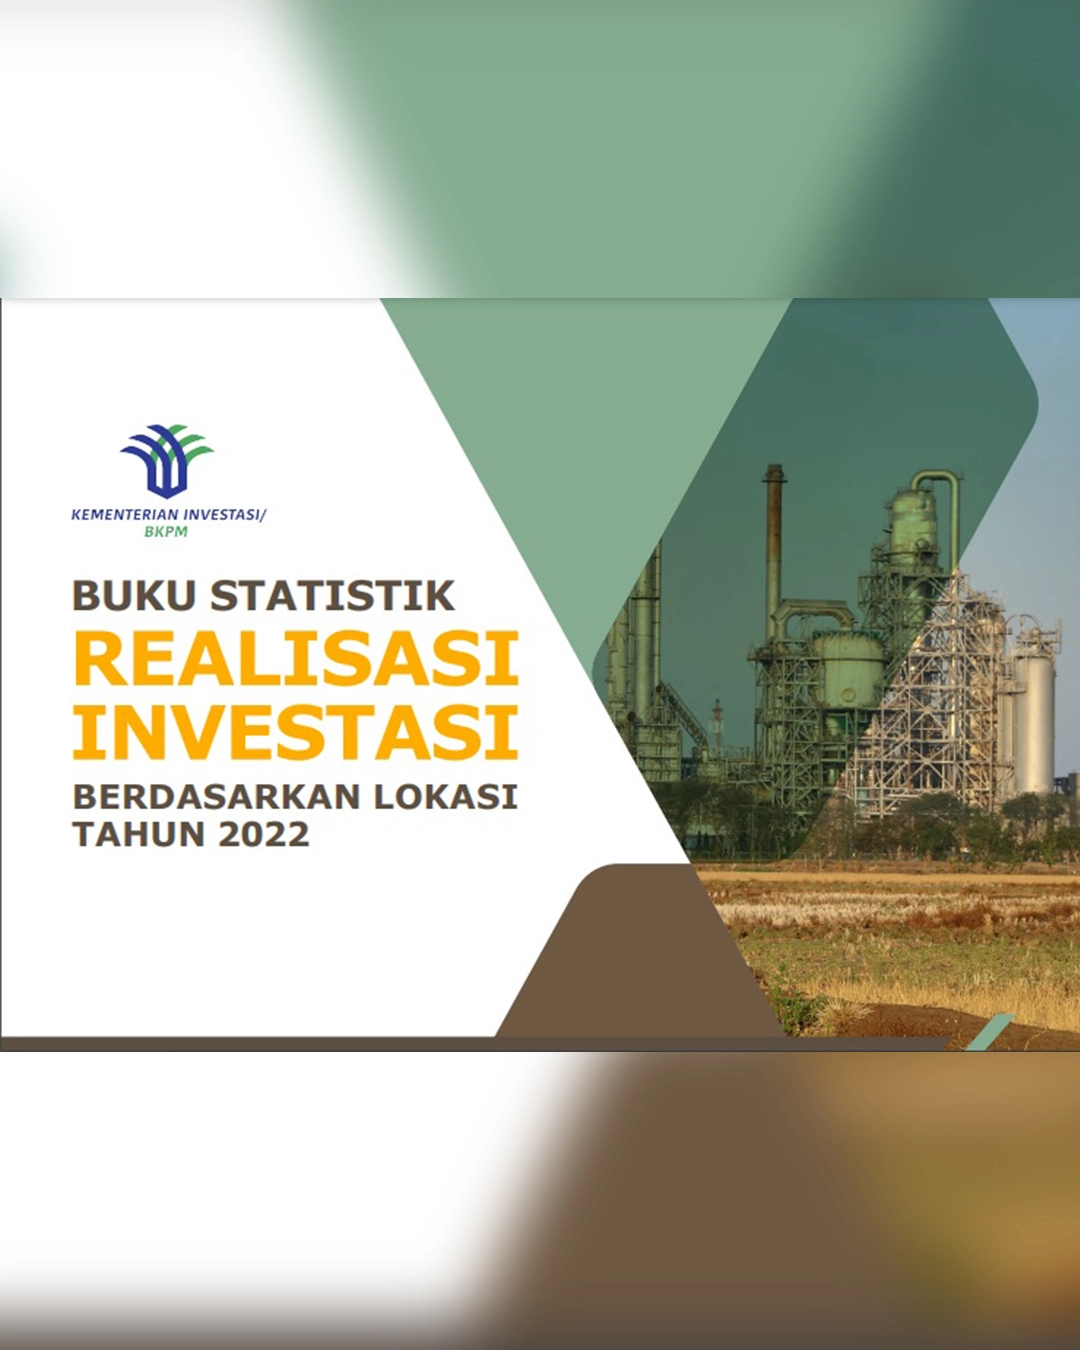 Buku Statistik Realisasi Investasi
Berdasarkan Lokasi 2022